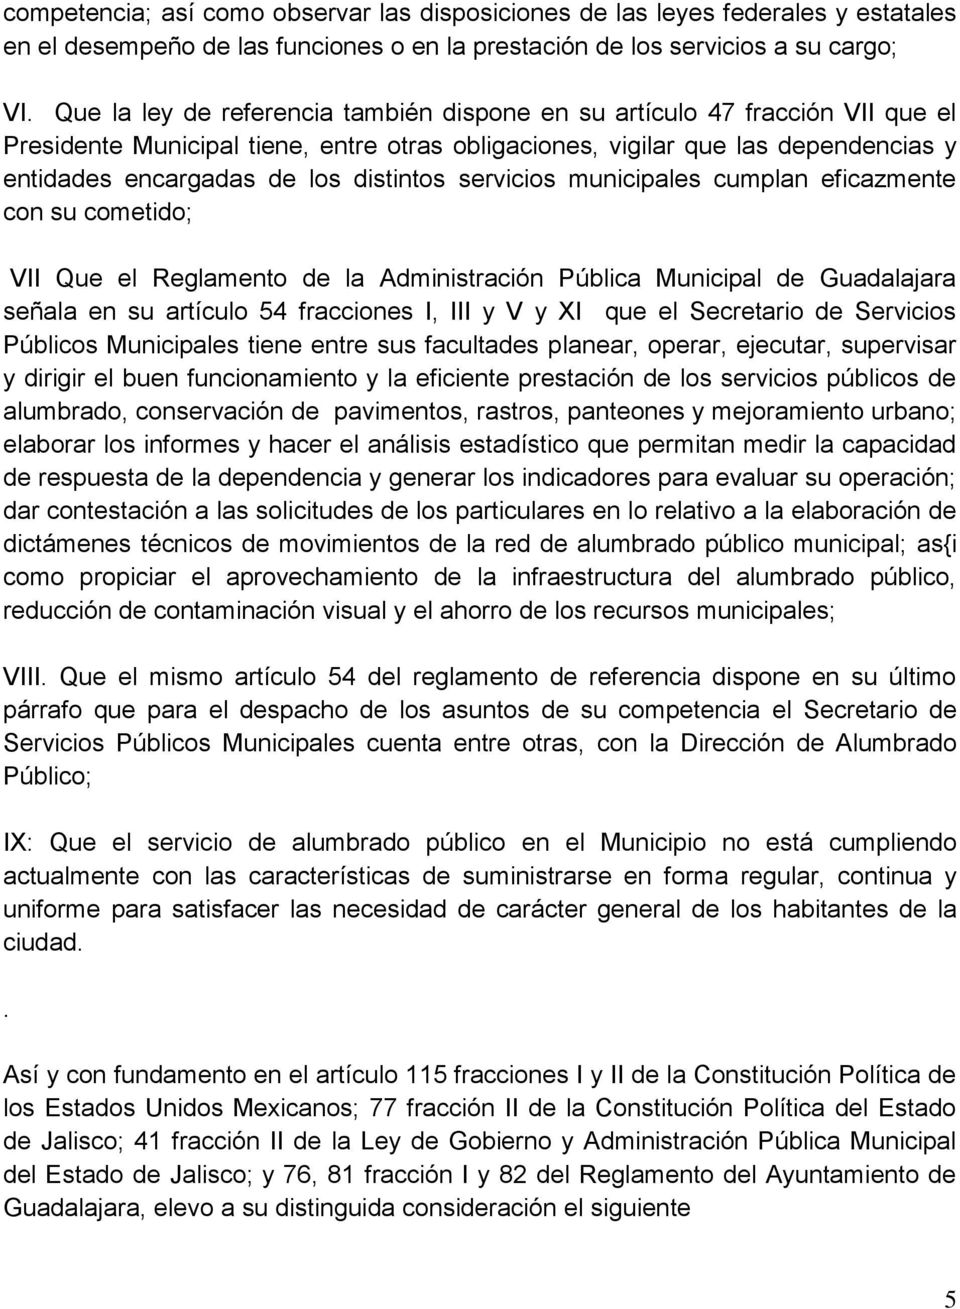 distintos servicios municipales cumplan eficazmente con su cometido; VII Que el Reglamento de la Administración Pública Municipal de Guadalajara señala en su artículo 54 fracciones I, III y V y XI